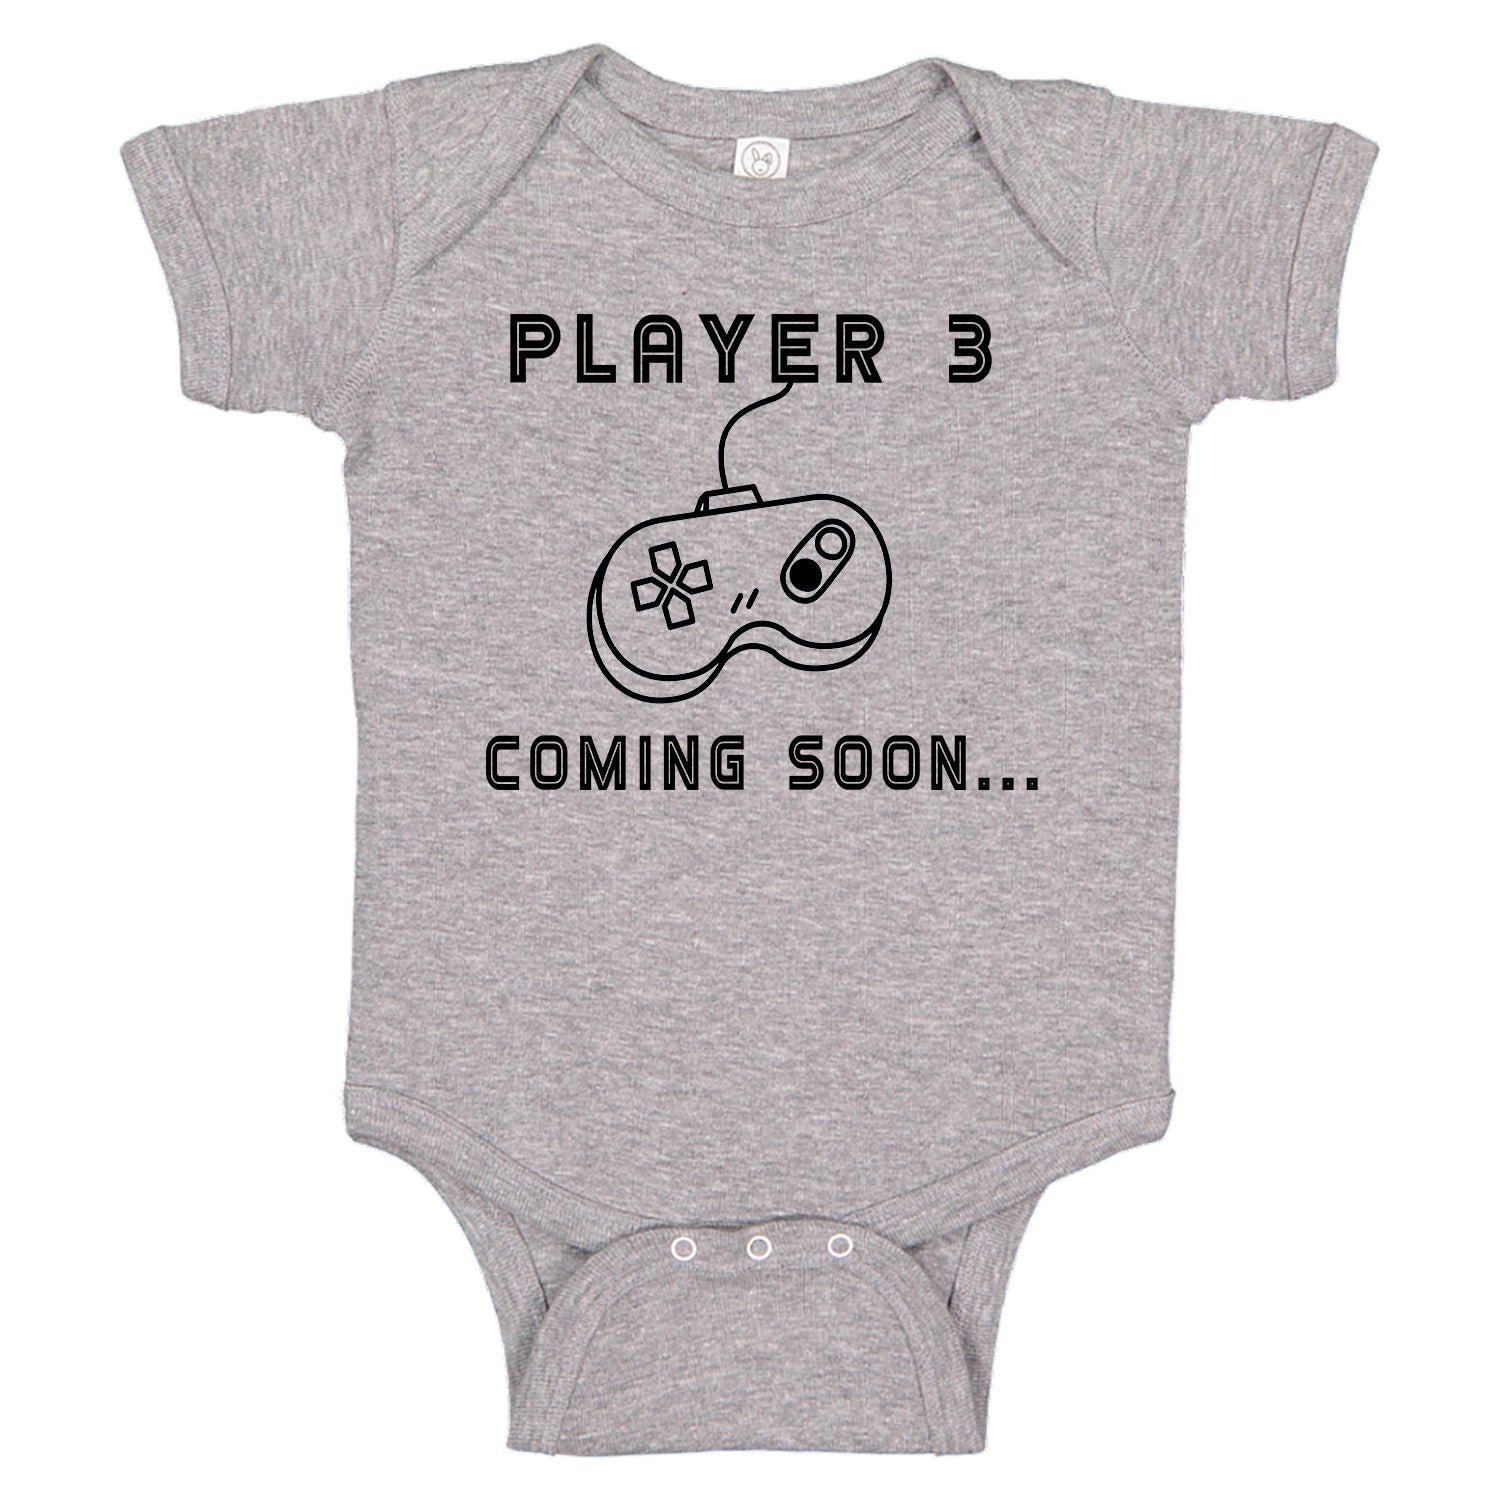 O bebê levado aprontou novamente no jogo baby Prank #game #shorts 